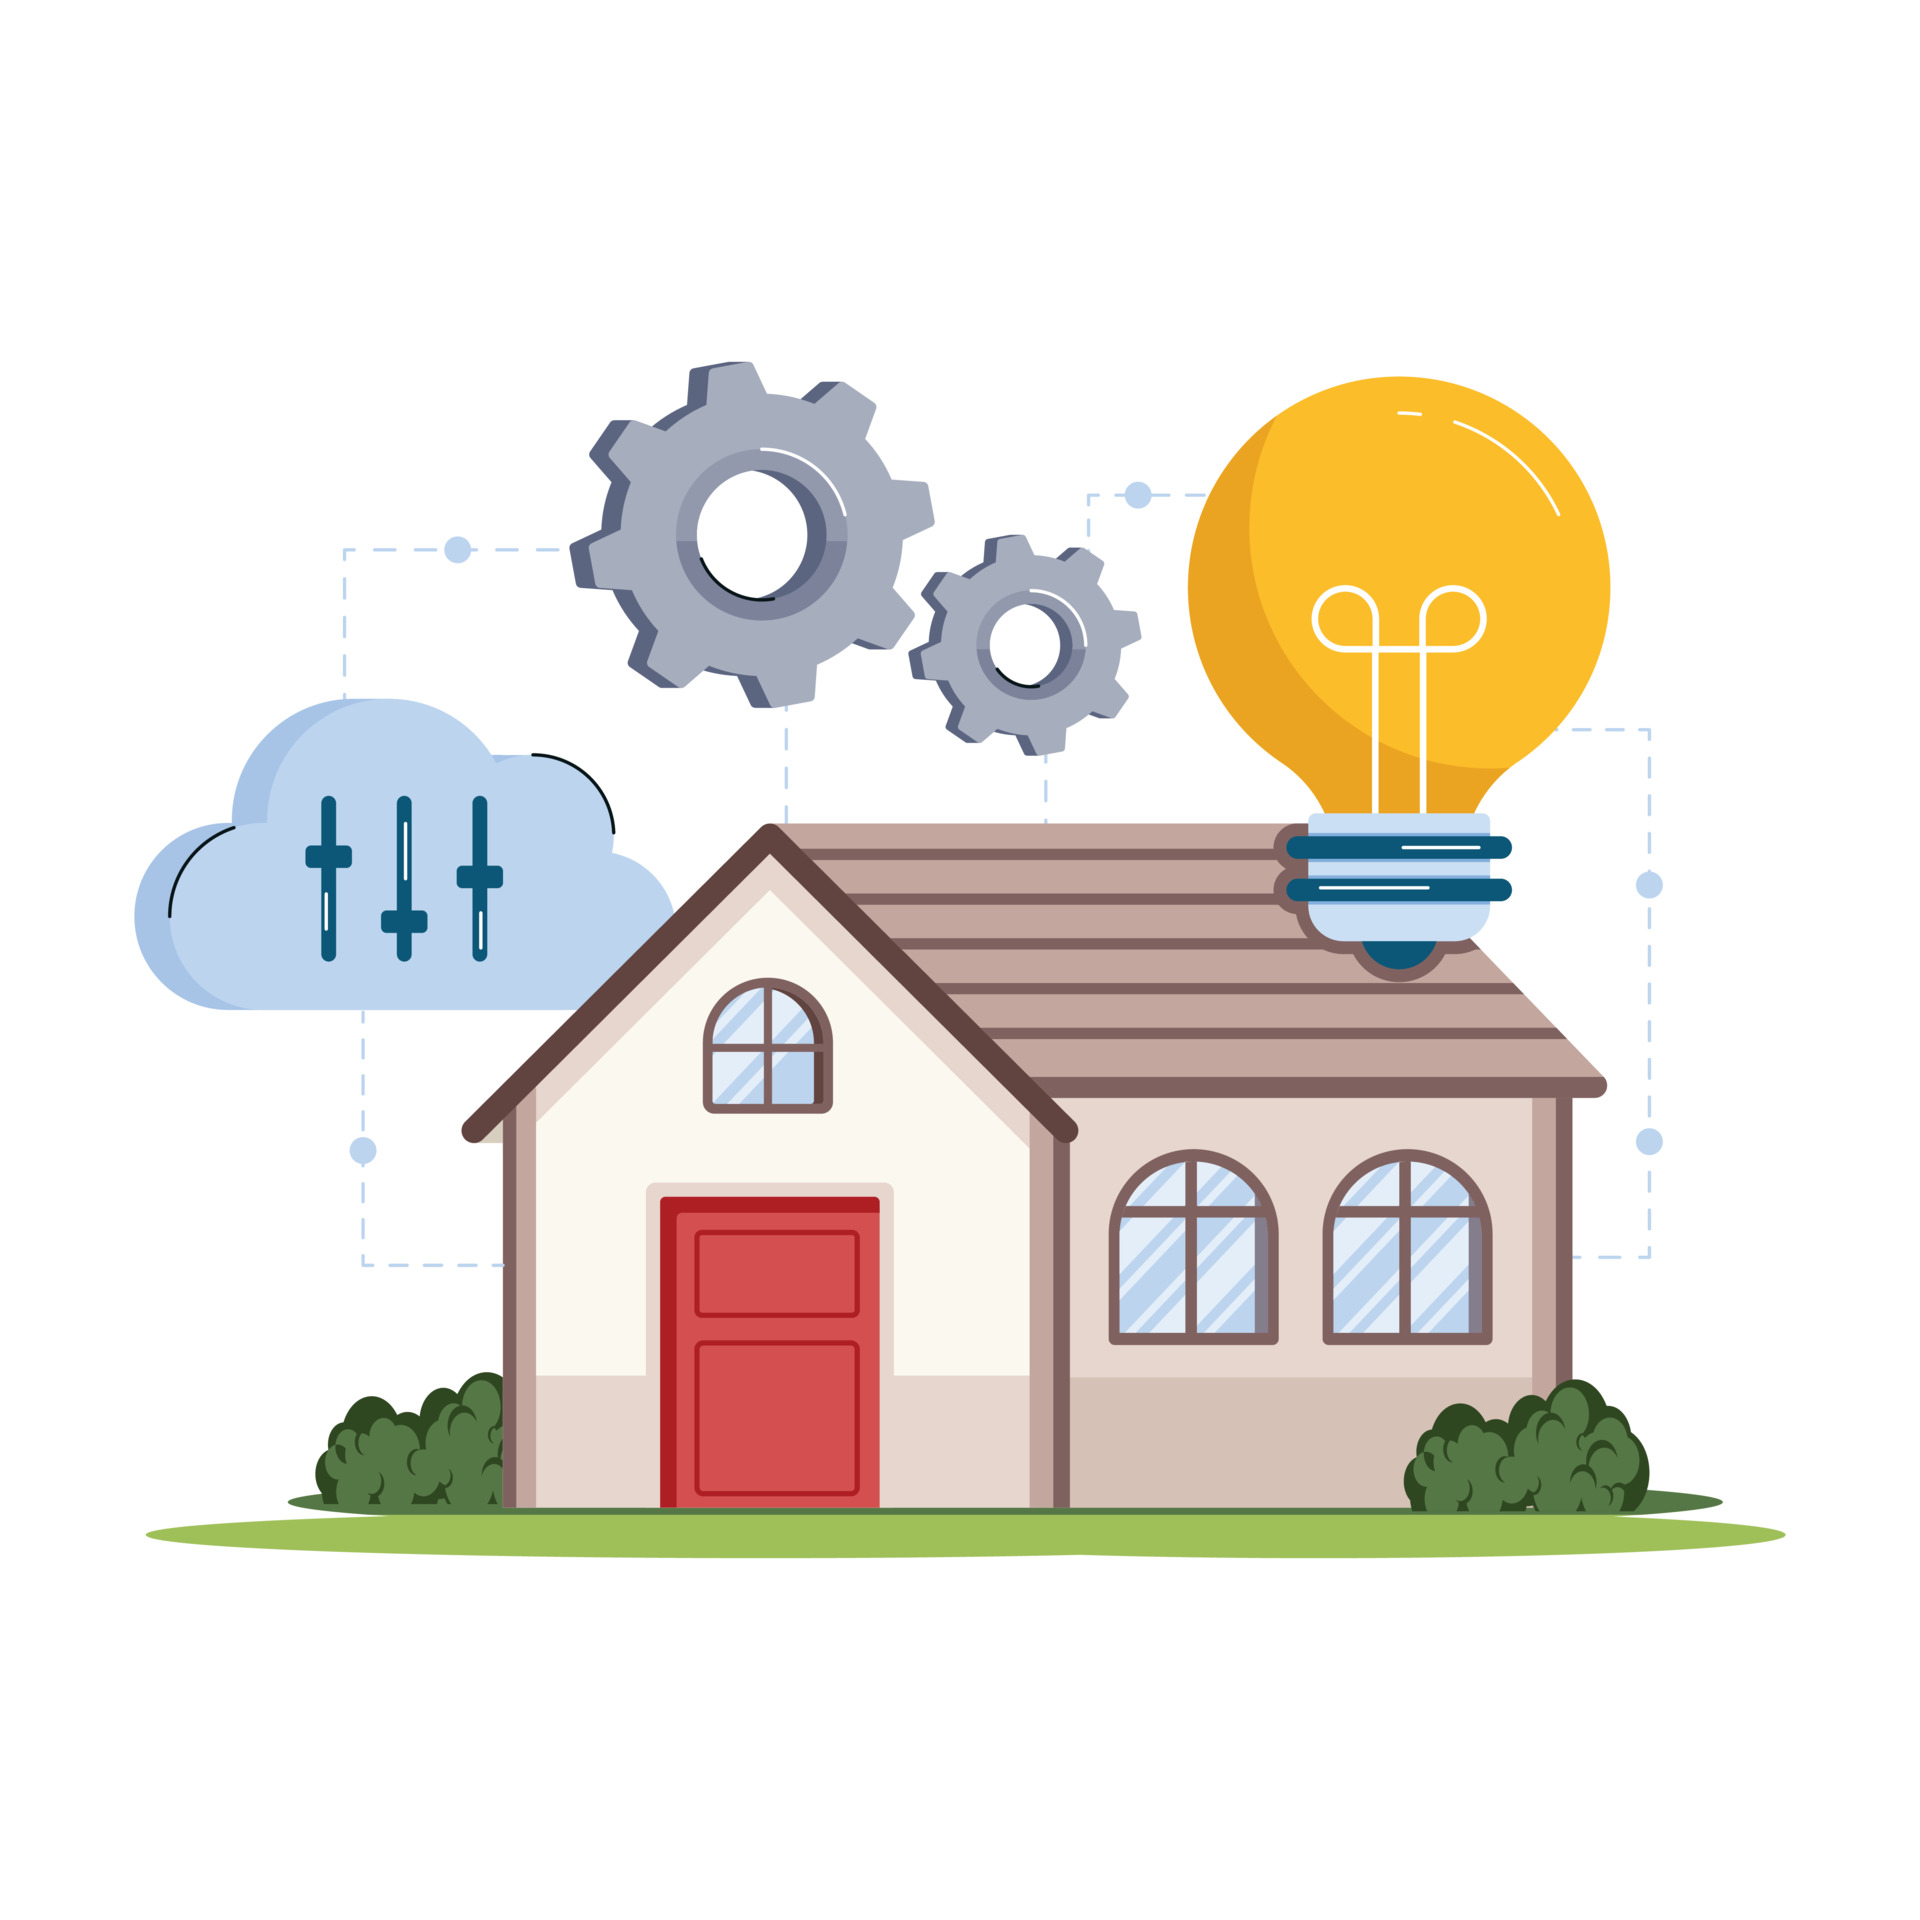 Wohngebaeudeversicherung-verbundene-Wohngebaeudeversicherung-Haus-und-Wohnungsschutzbrief